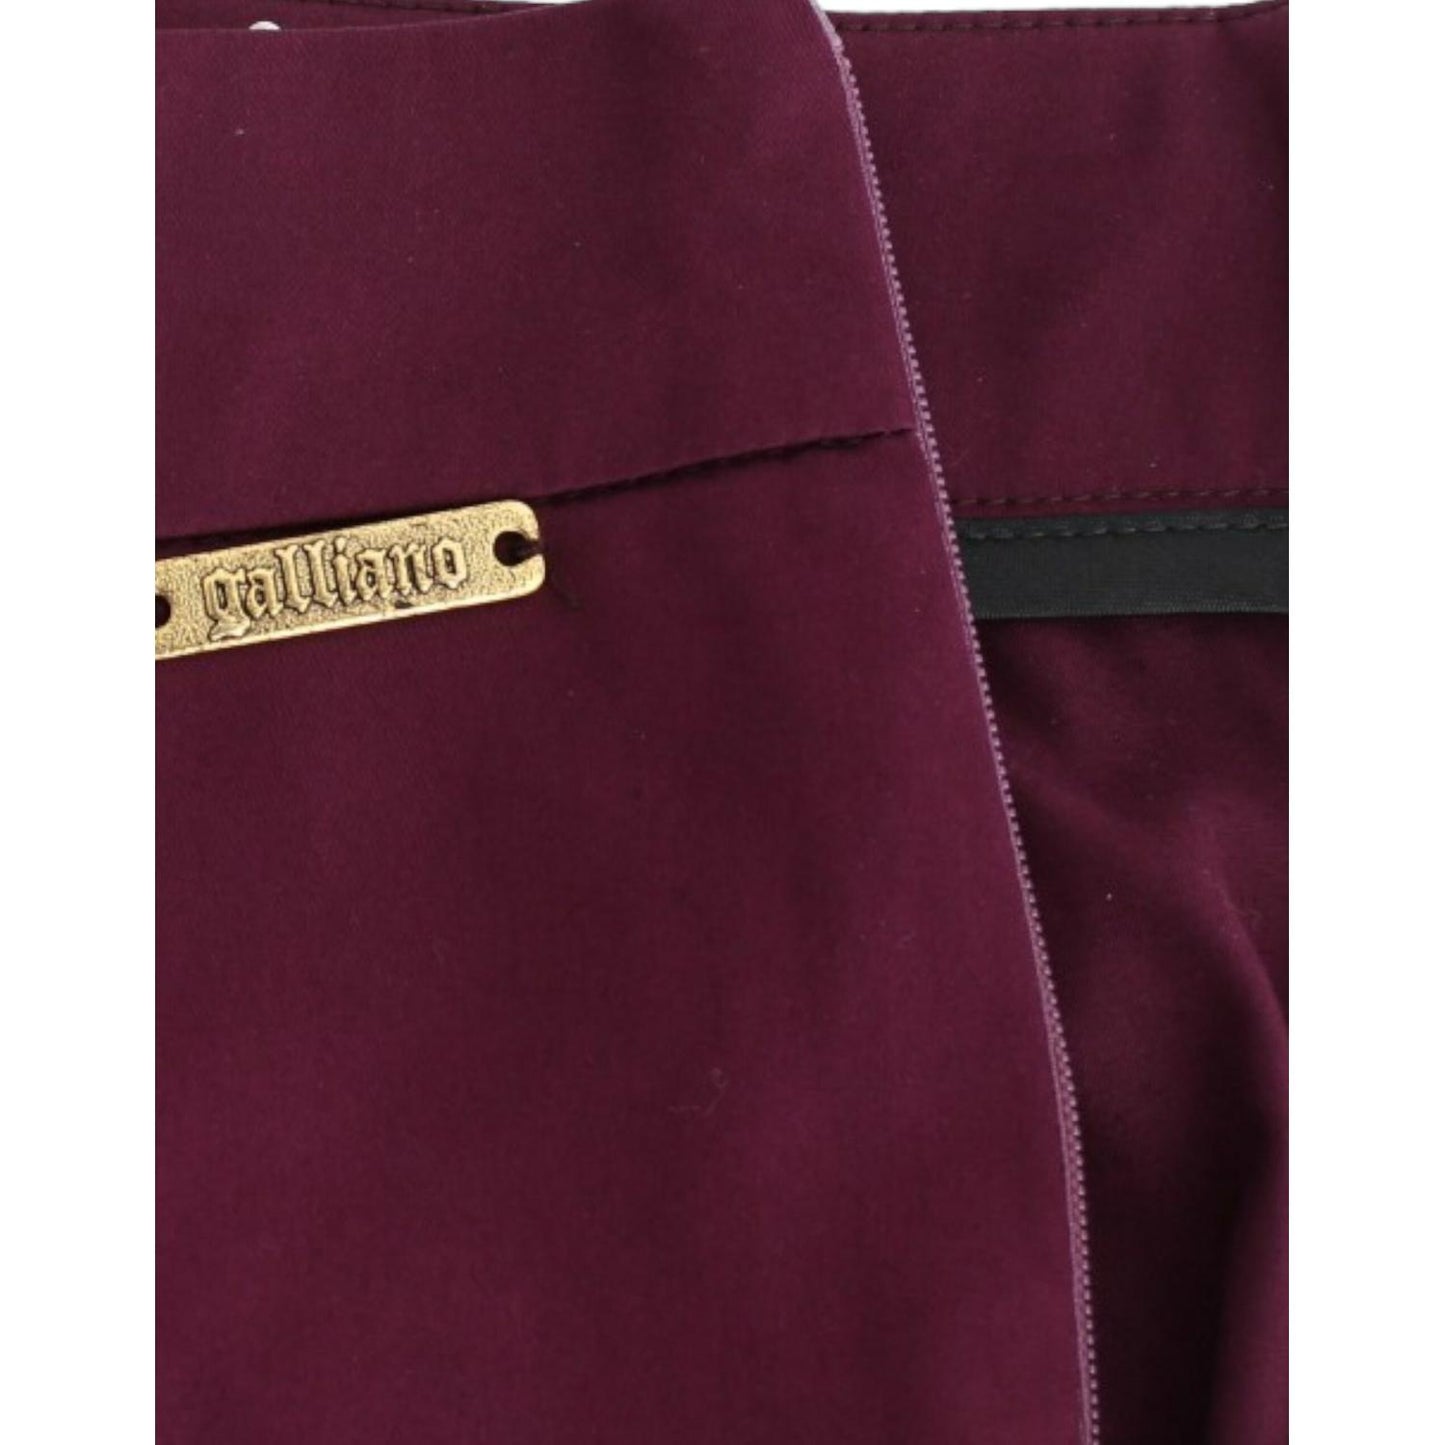 John Galliano Elegant Purple Slim Pants purple-slim-fit-pants 6319-purple-slim-fit-pants-5-scaled-51bf4f68-257.jpg